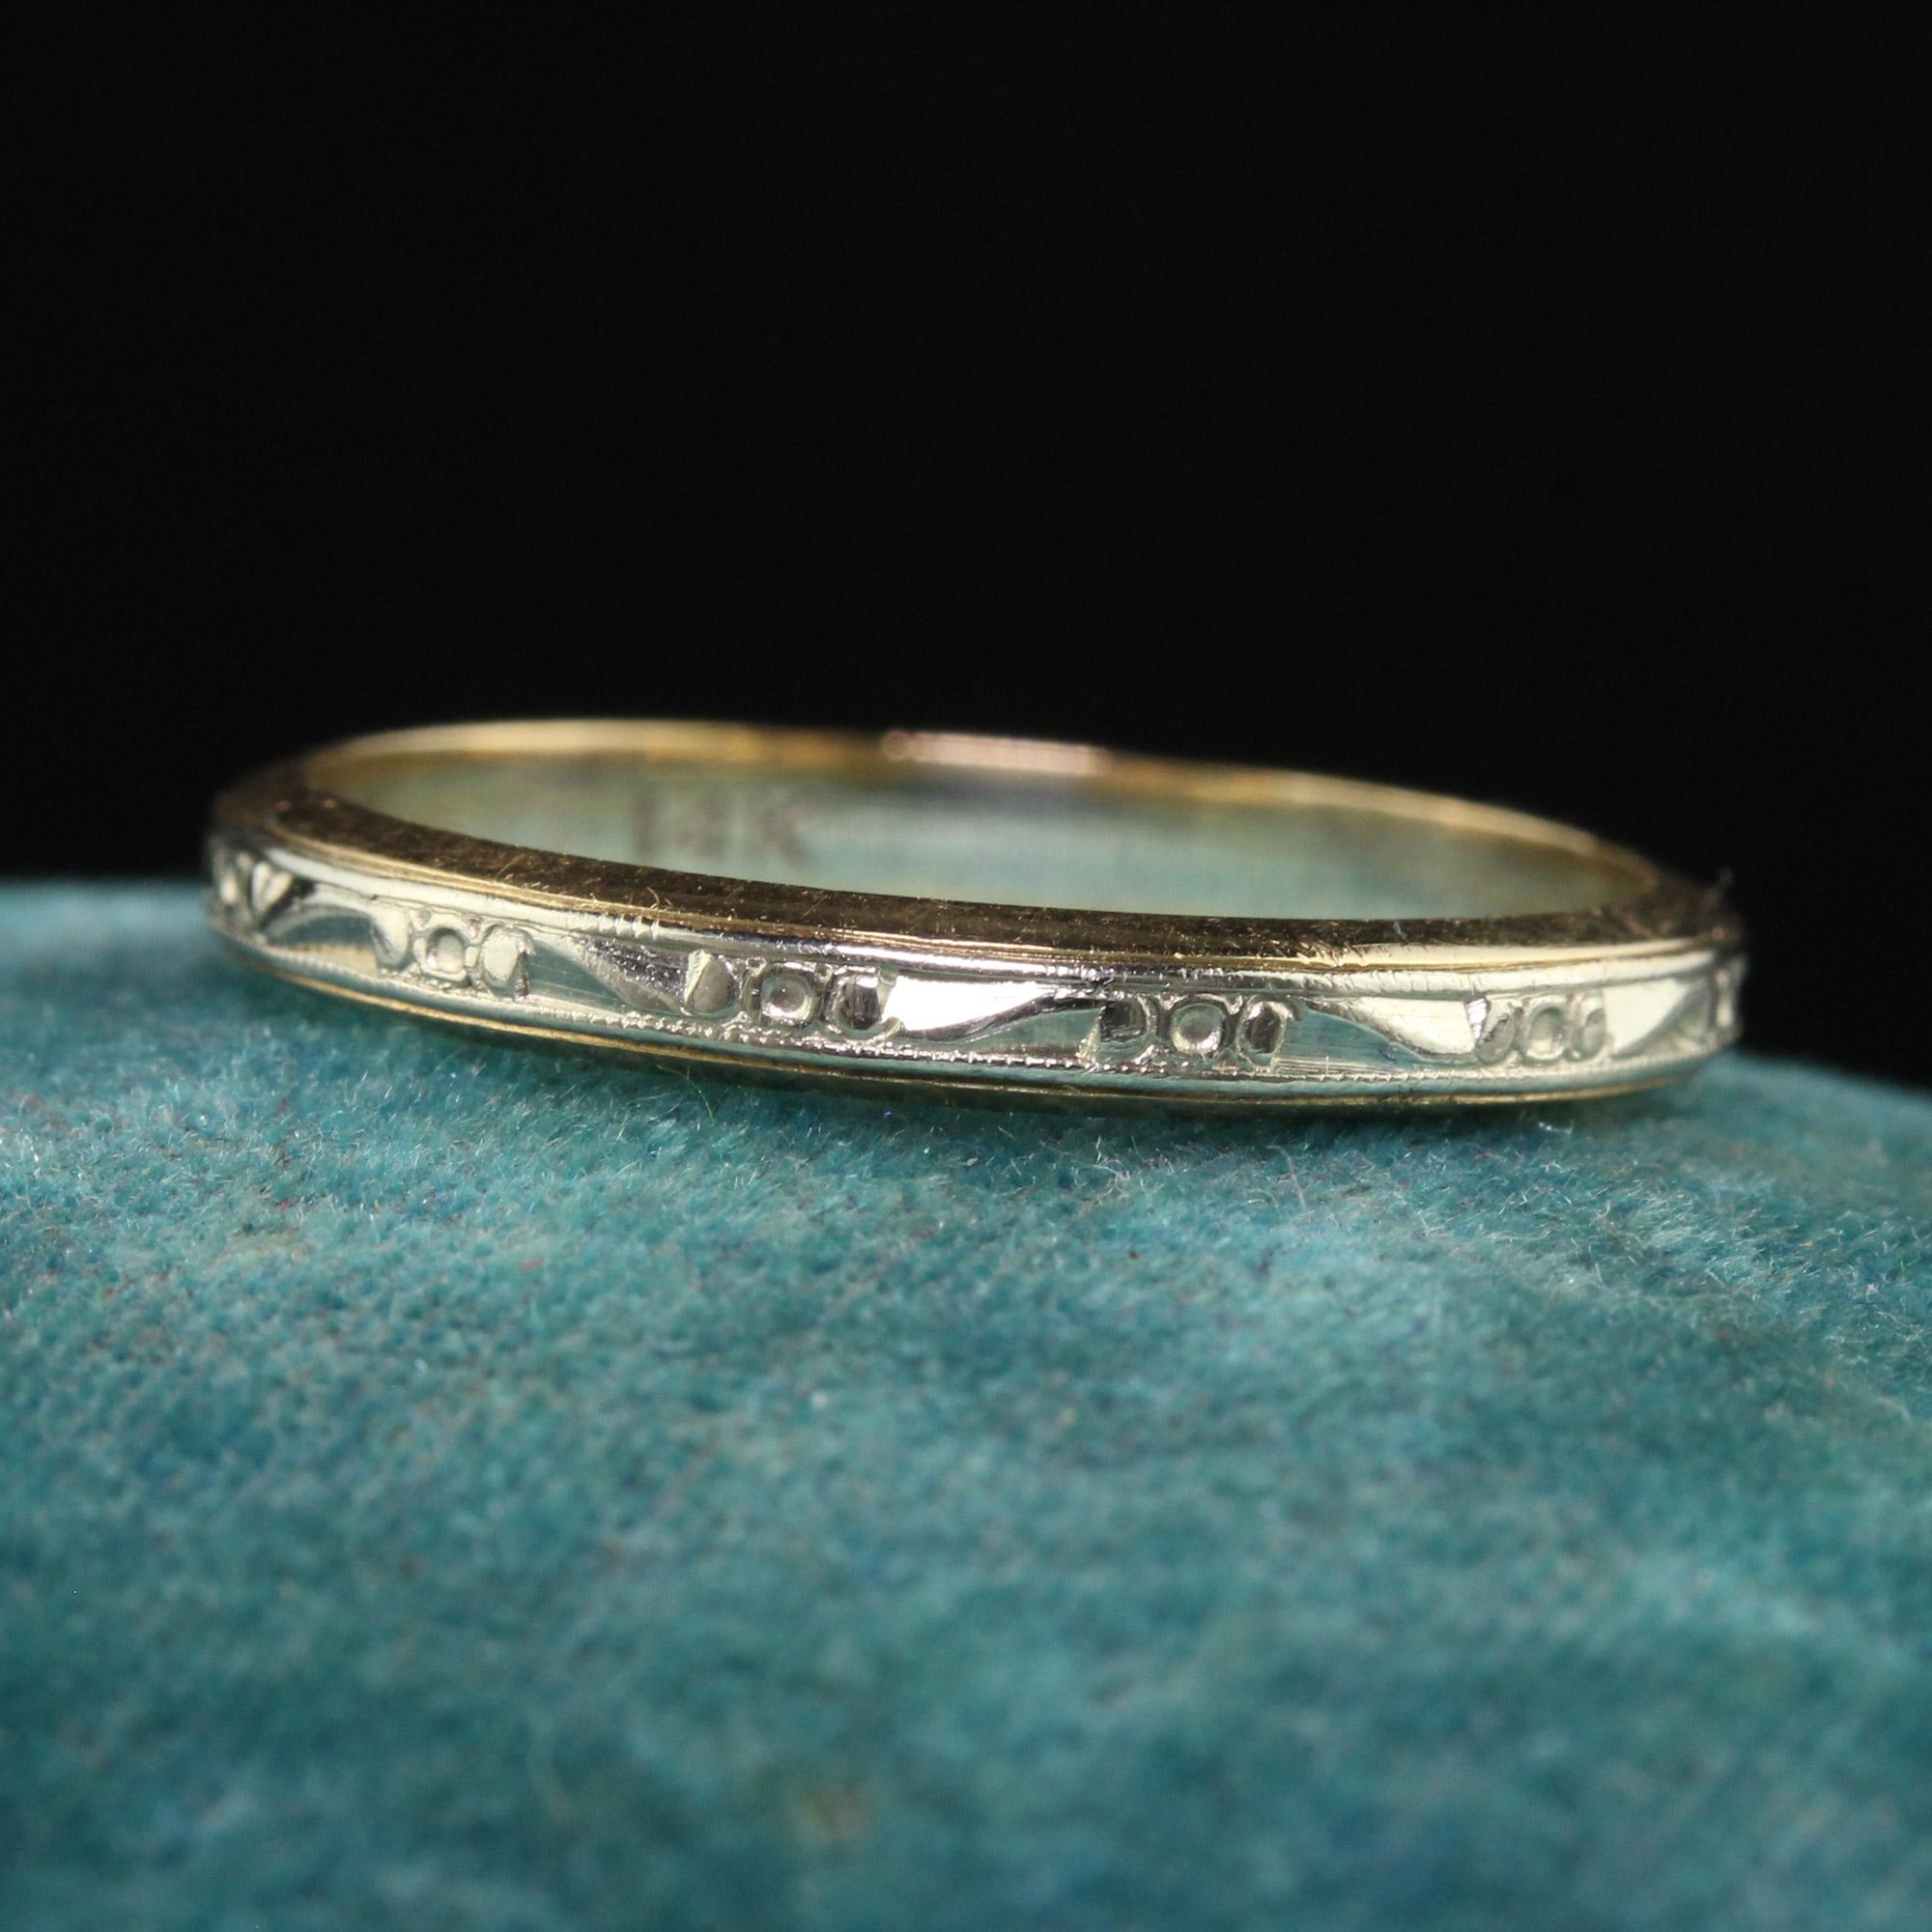 Schöne antike Art Deco 14K zwei Töne graviert Hochzeit Band - Größe 6 1/2. Diese schöne Hochzeit Band ist in 14k Gelb- und Weißgold gefertigt. Der Ring ist um den gesamten Ring herum graviert und sitzt tief am Finger. Der Ring ist in gutem Zustand